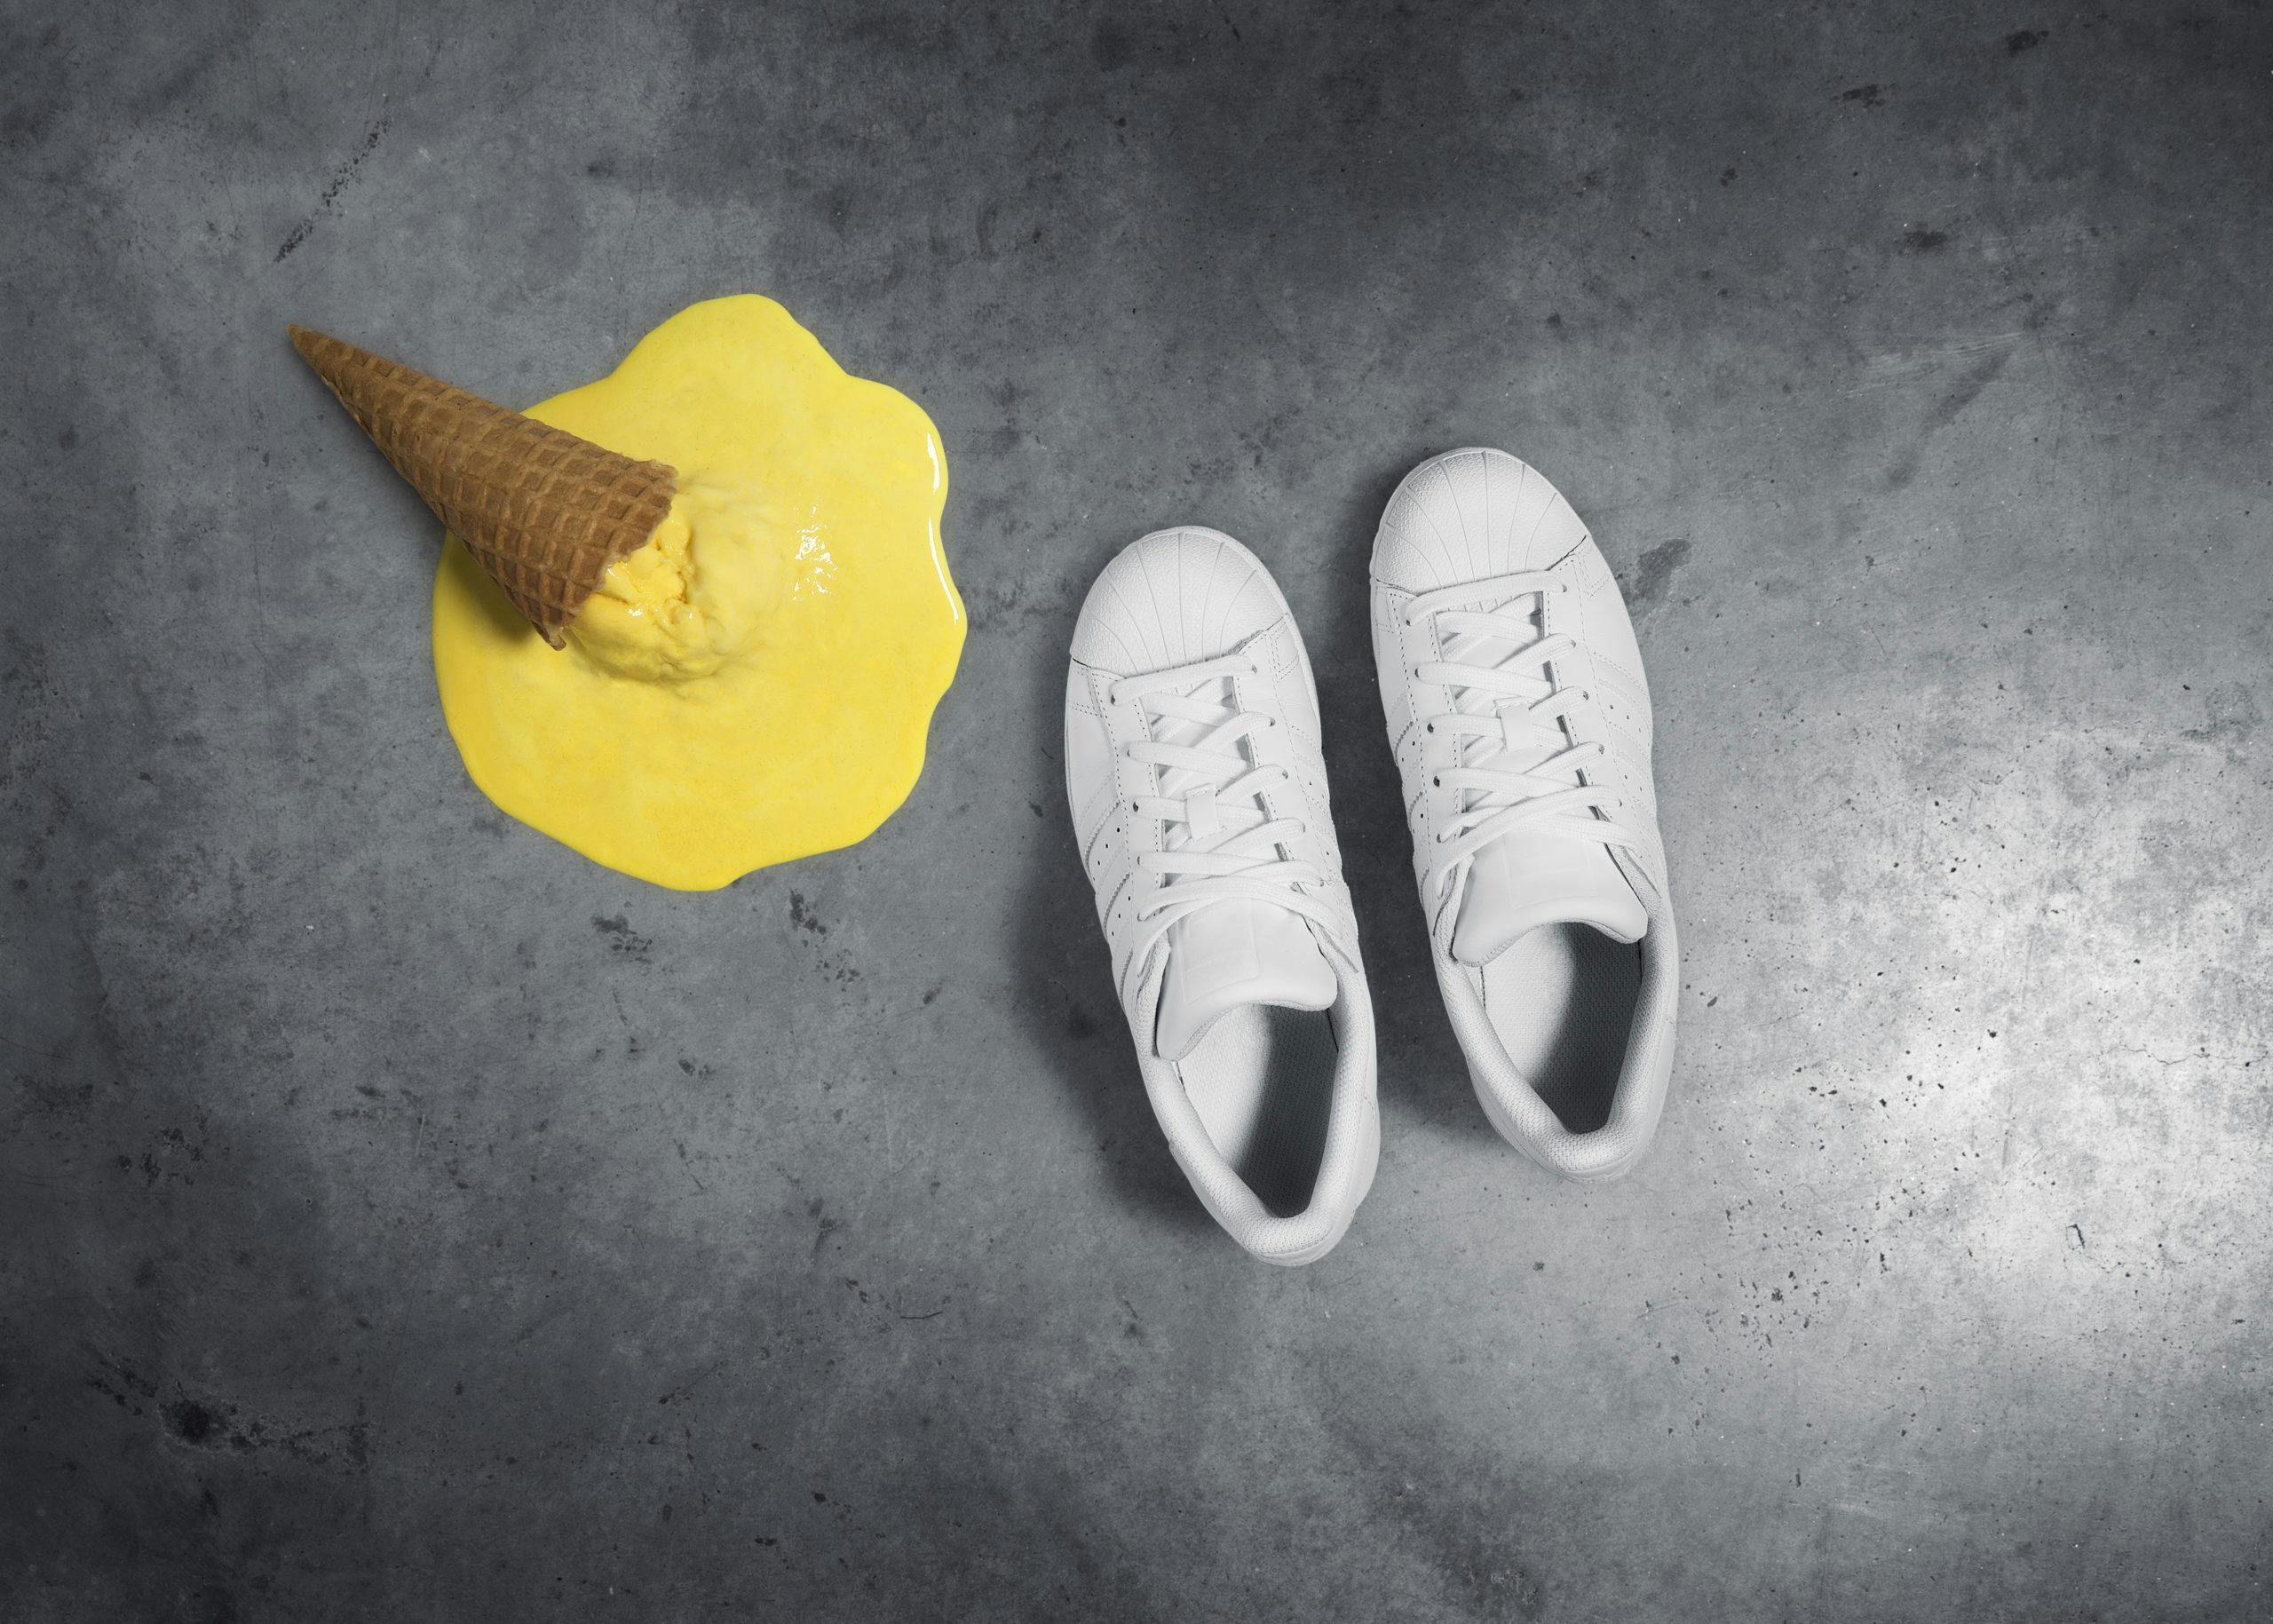 Smält glass och skor, Brunngårds kampanj Shoe Shame framtagen av Consid Communication